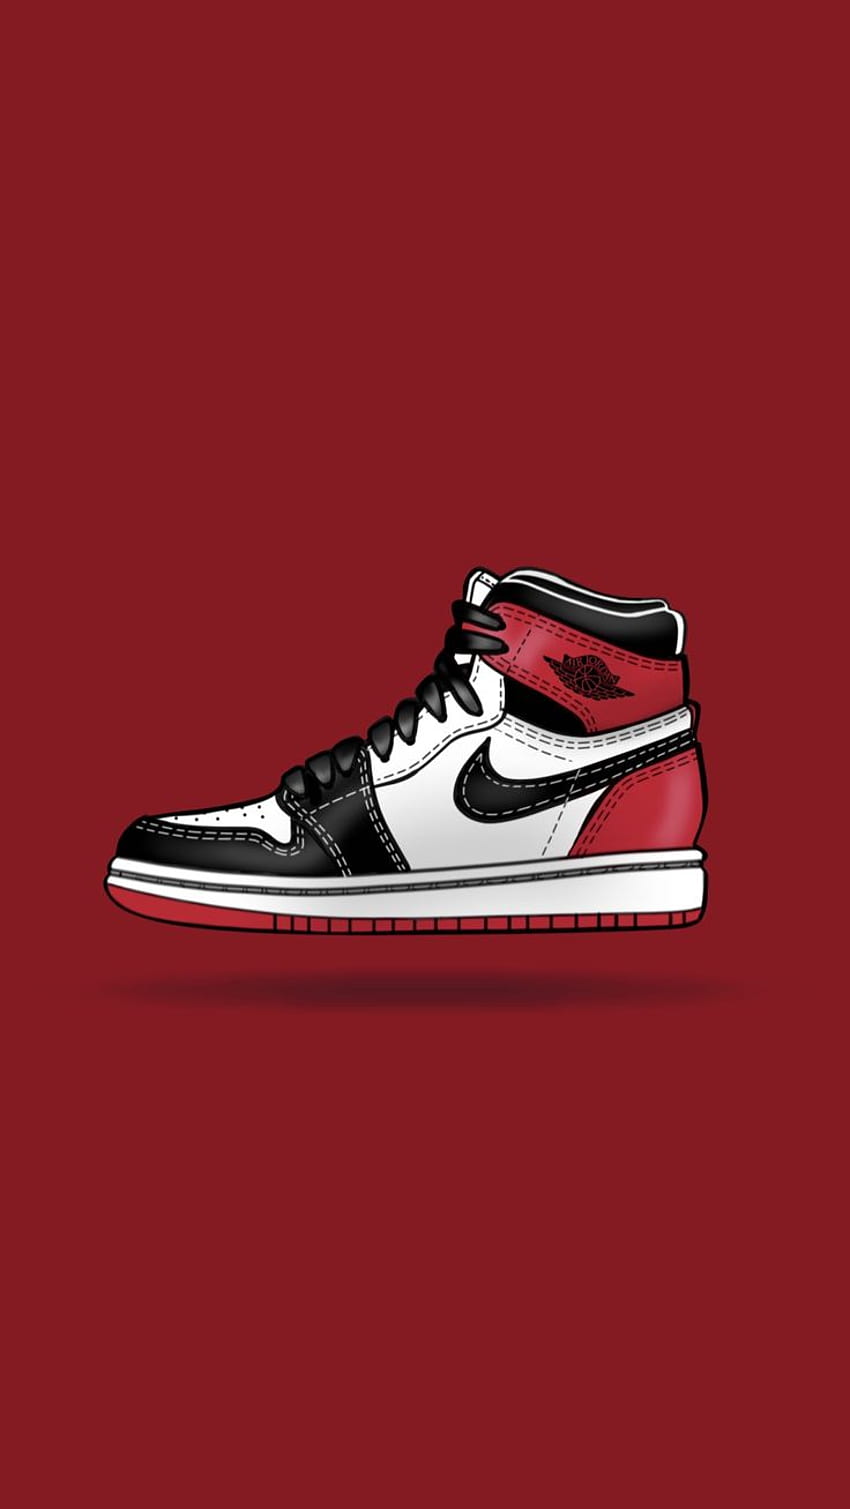 Jordan 1 Klasik - Merah. Sepatu , Sepatu kets , Sepatu Jordan , Sepatu Jordan Merah wallpaper ponsel HD